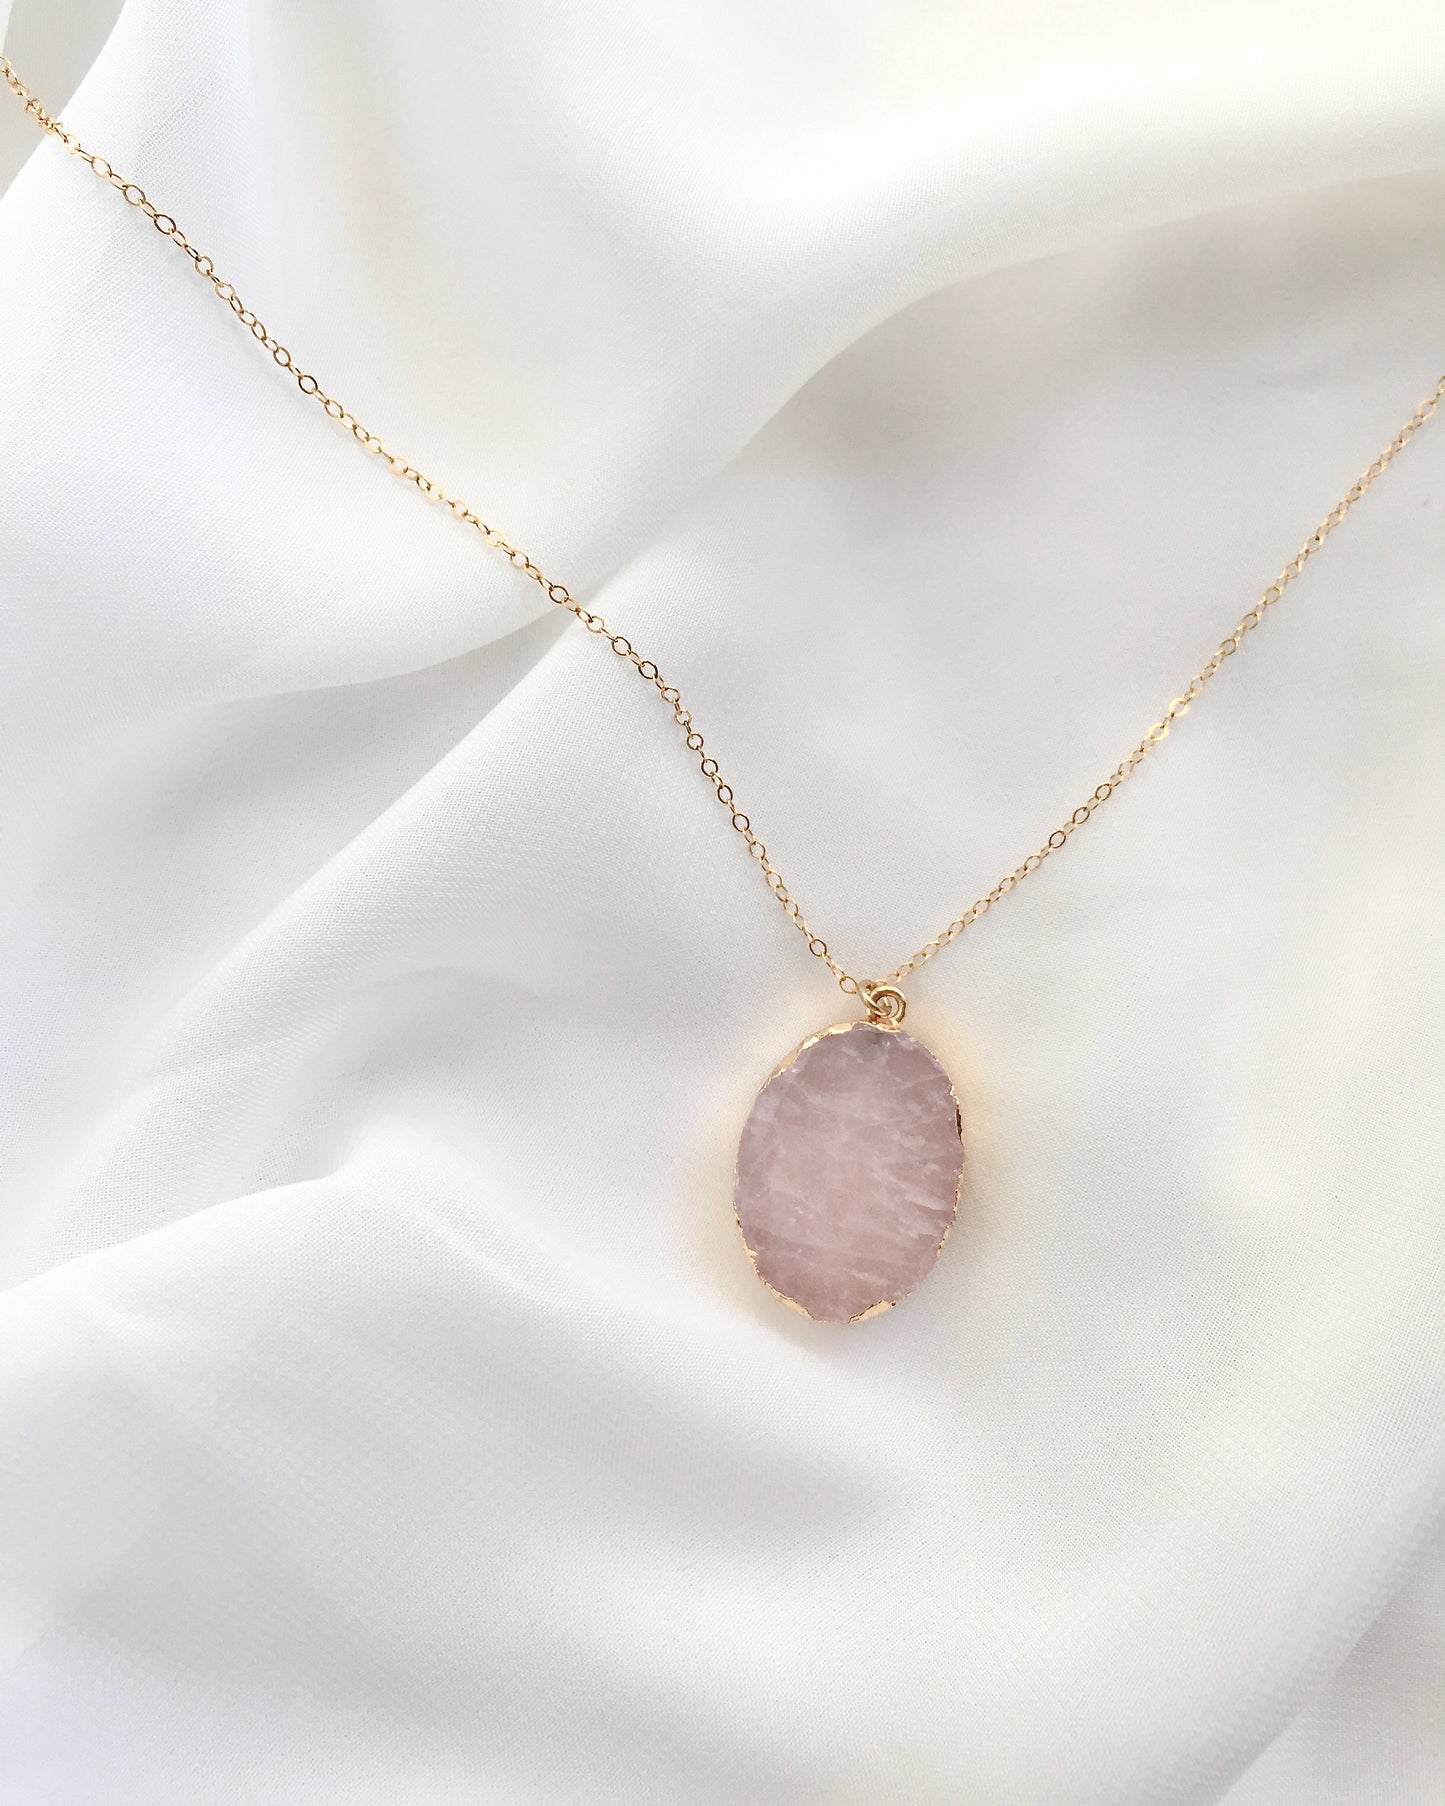 Rose Quartz Pendant Necklace | Simple Rose Quartz Necklace | IB Jewelry